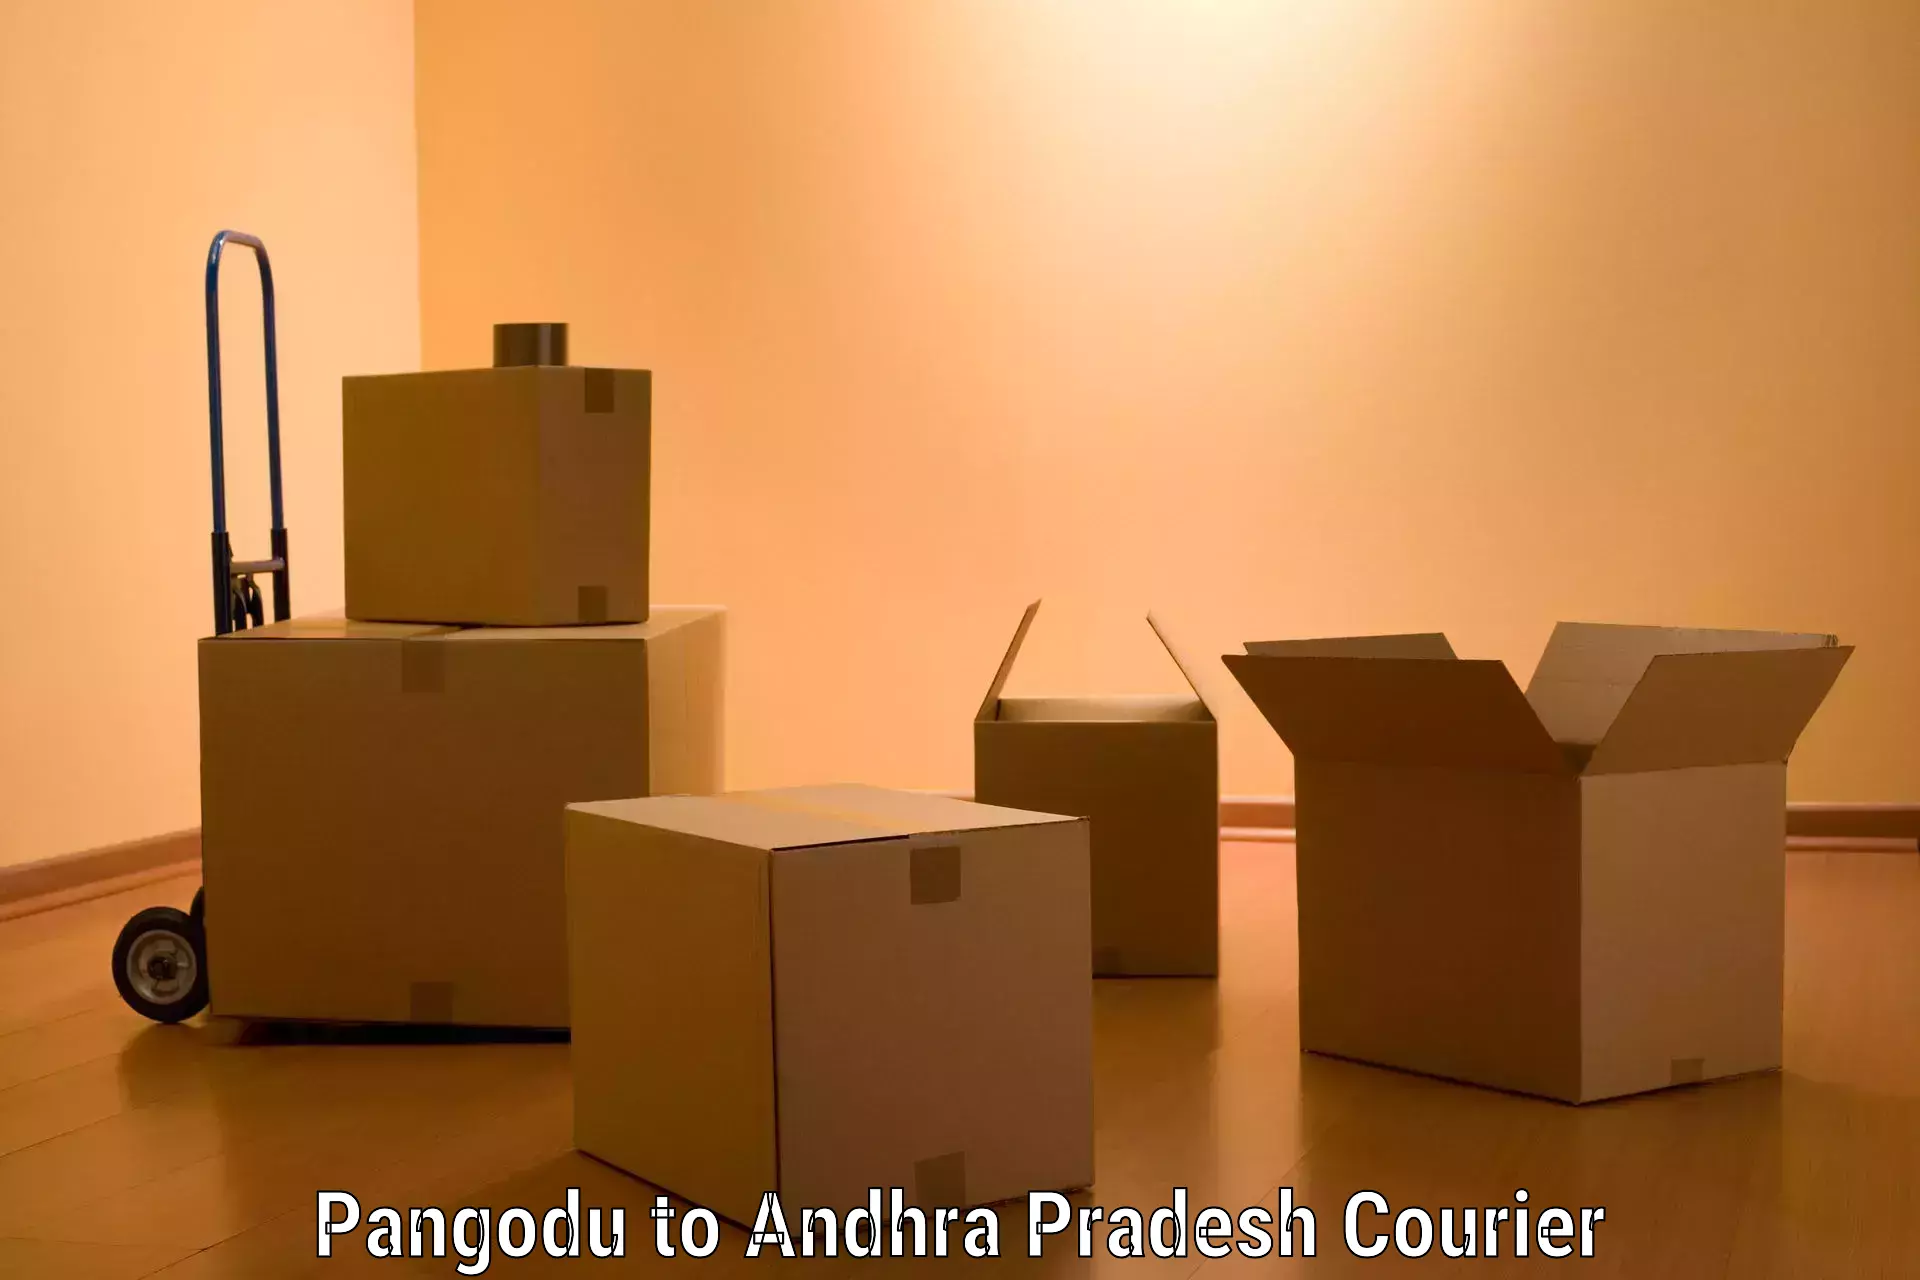 Moving and handling services Pangodu to Garividi